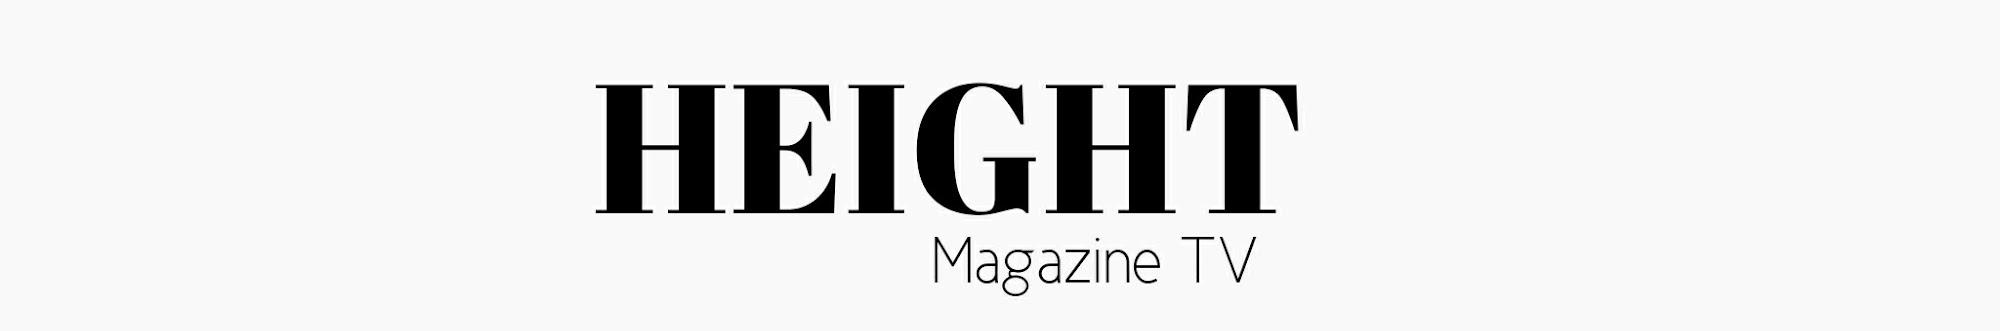 HEIGHT Magazine TV